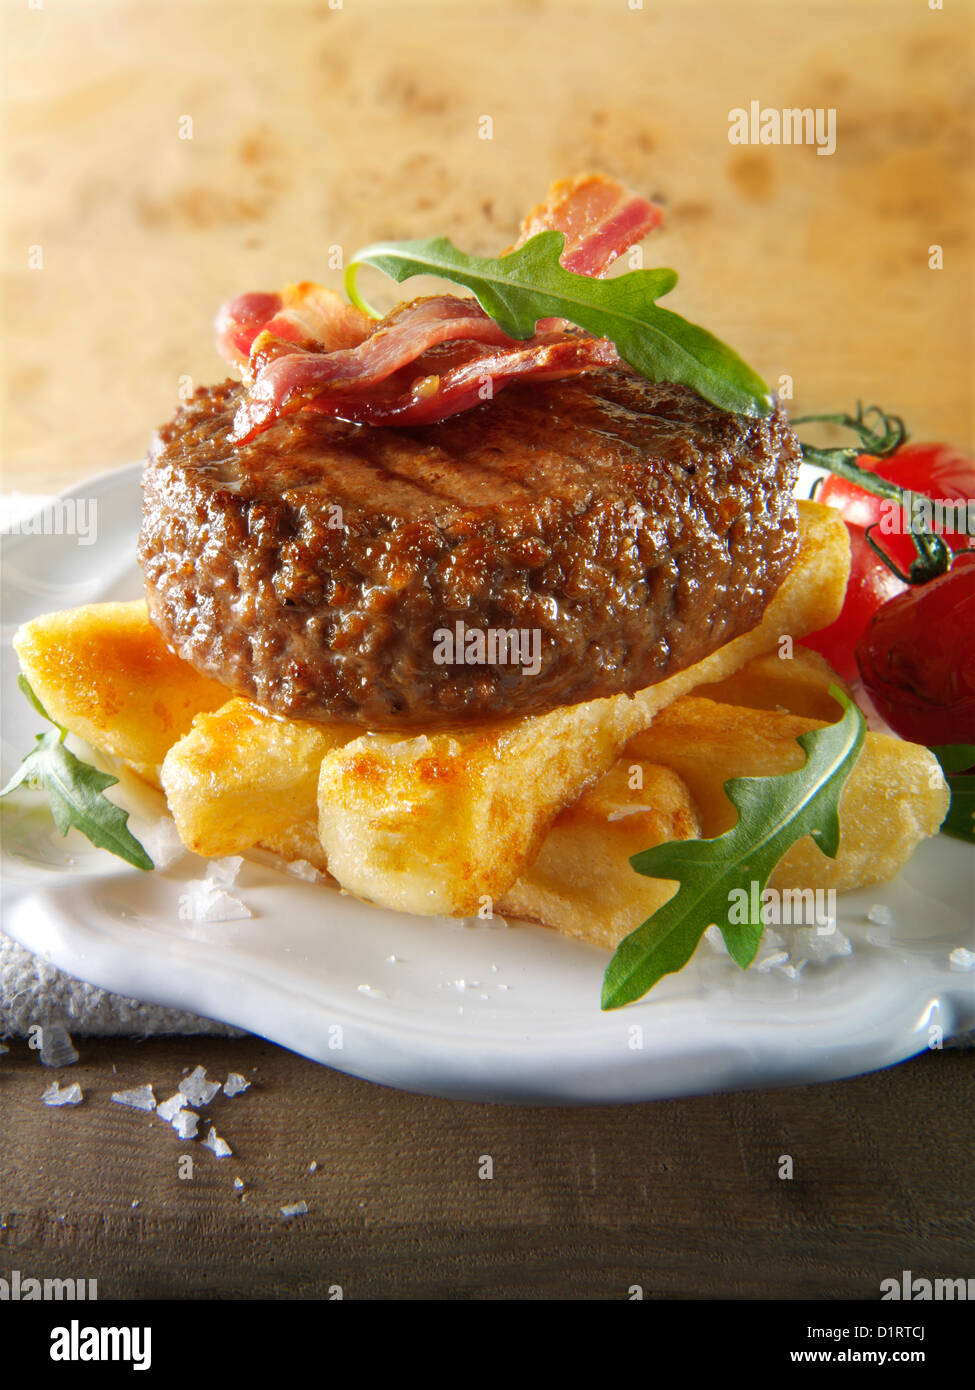 Gegrilltes Rindfleisch-Burger mit klobigen Pommes Frites und Salat Fotos Char. Funky Stockfotos Stockfoto